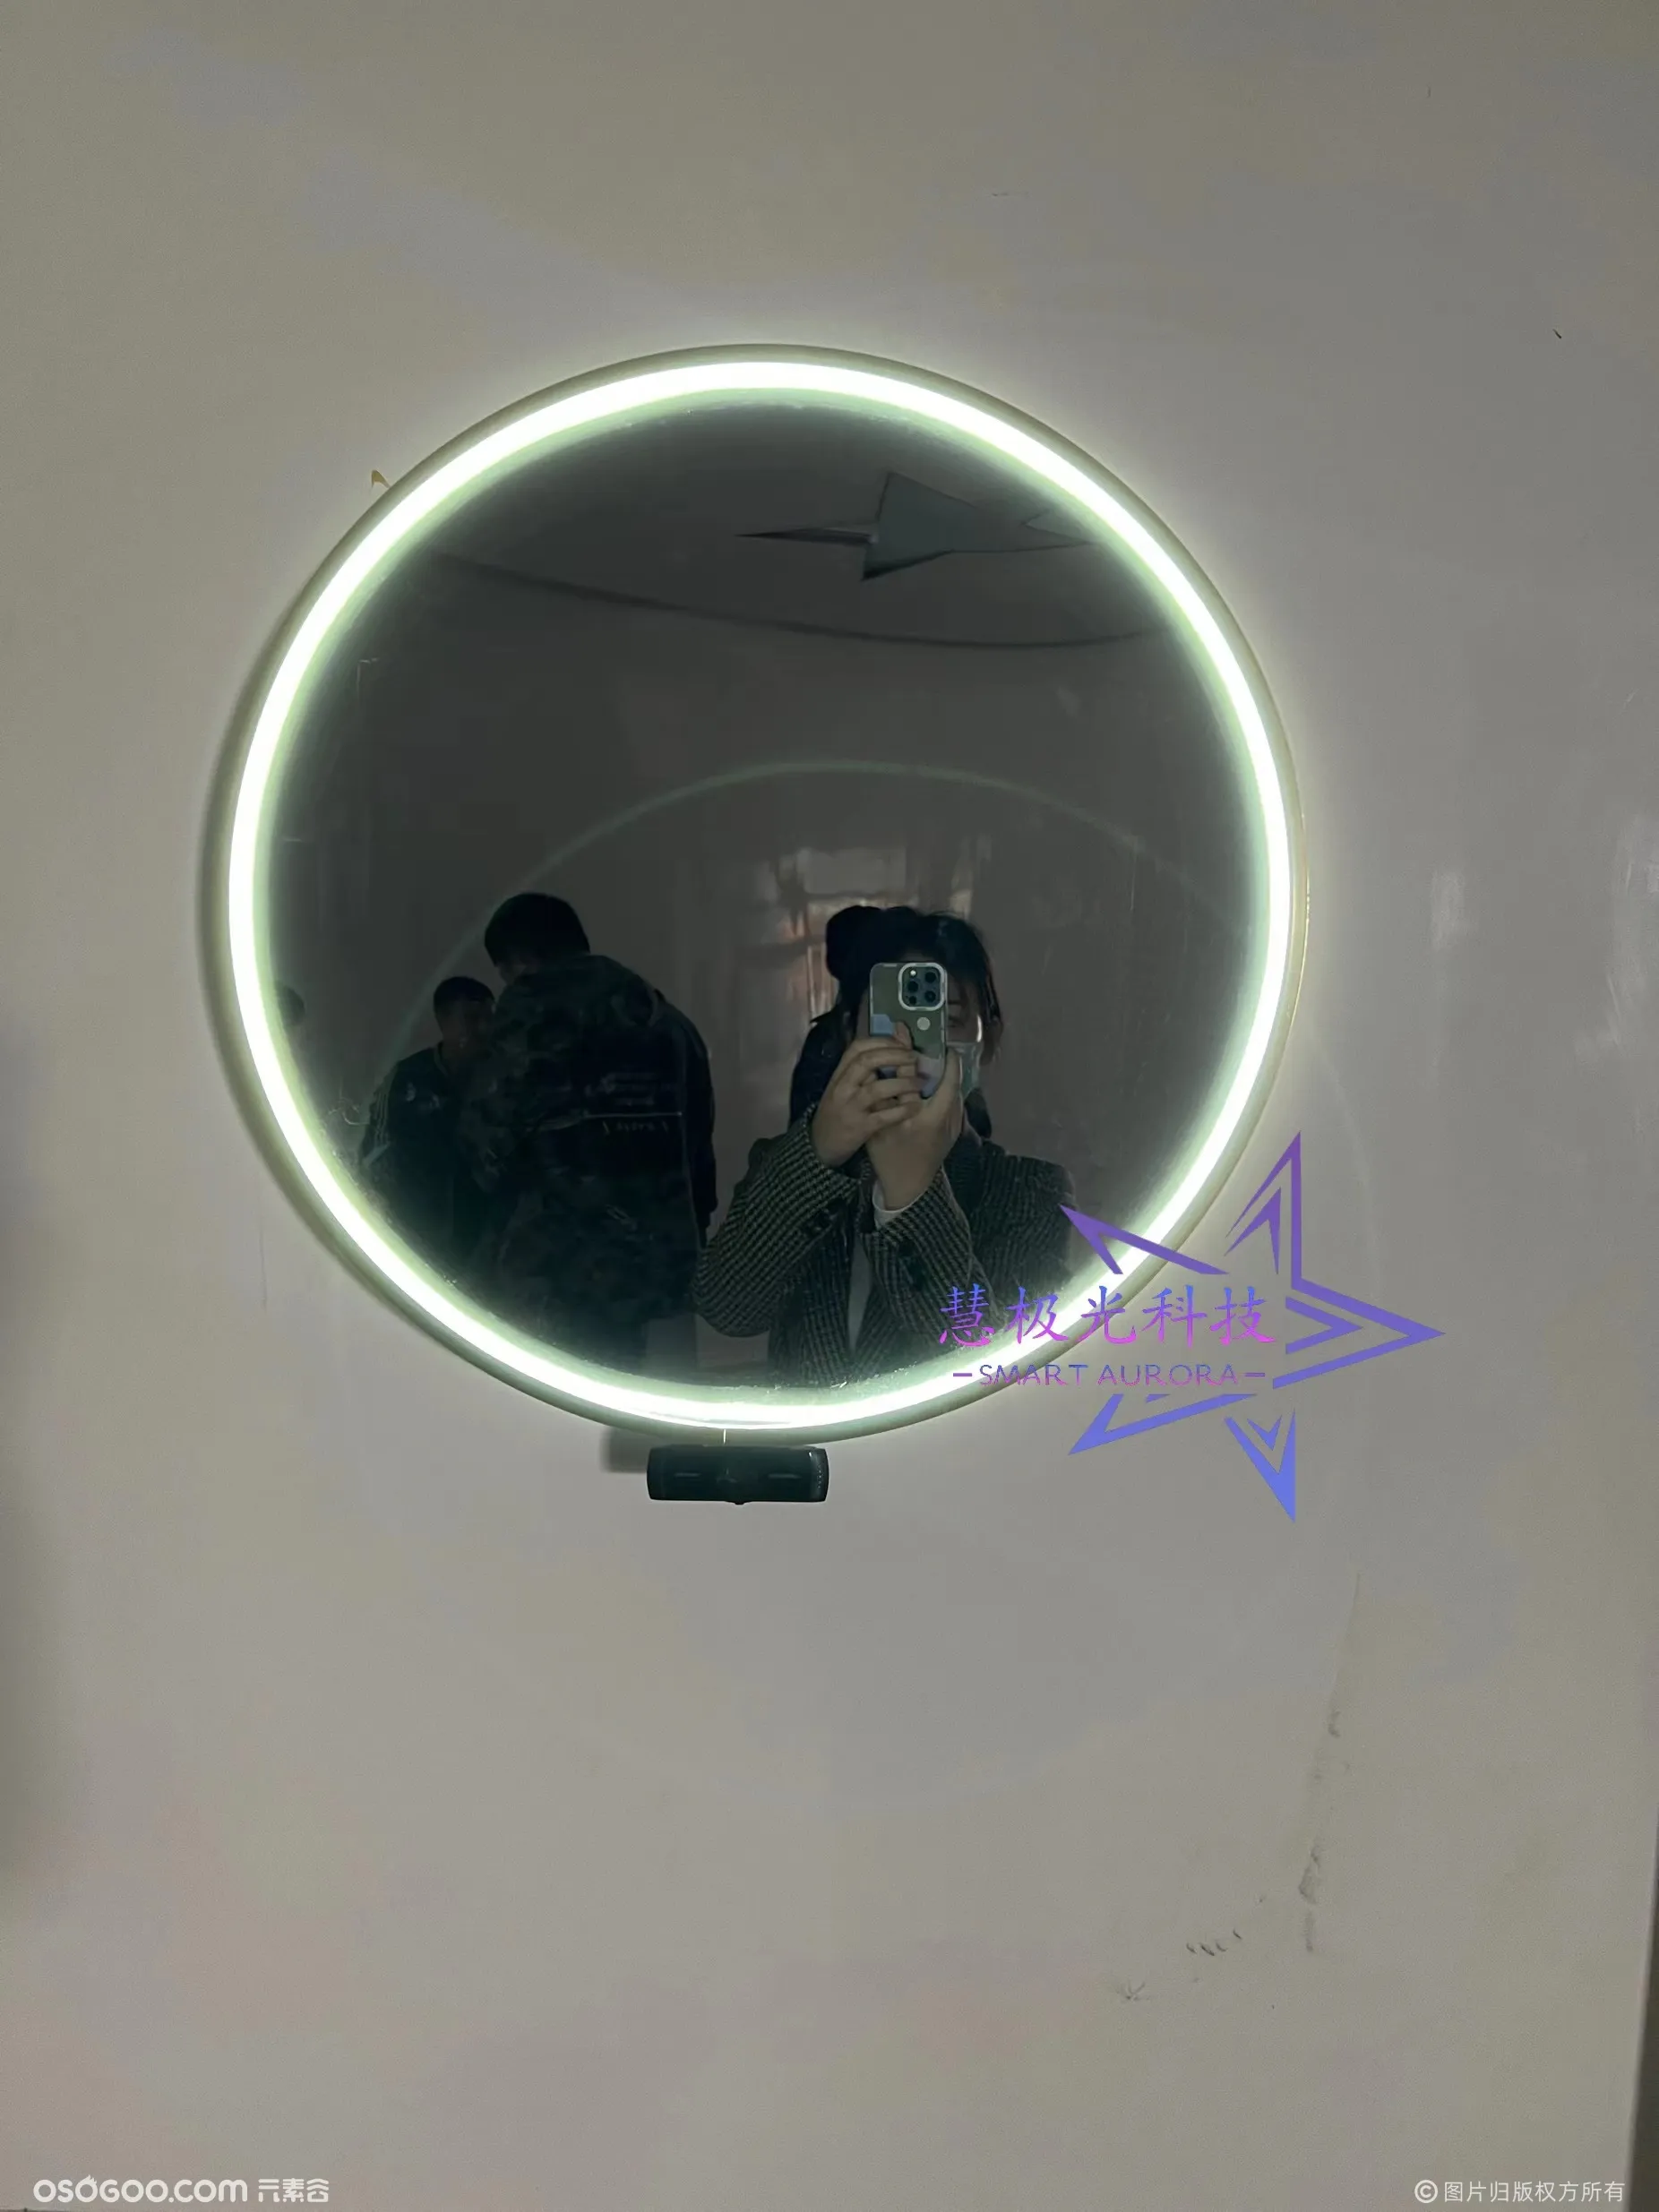 Ar魔镜创意互动装置可以对话拍照的镜子